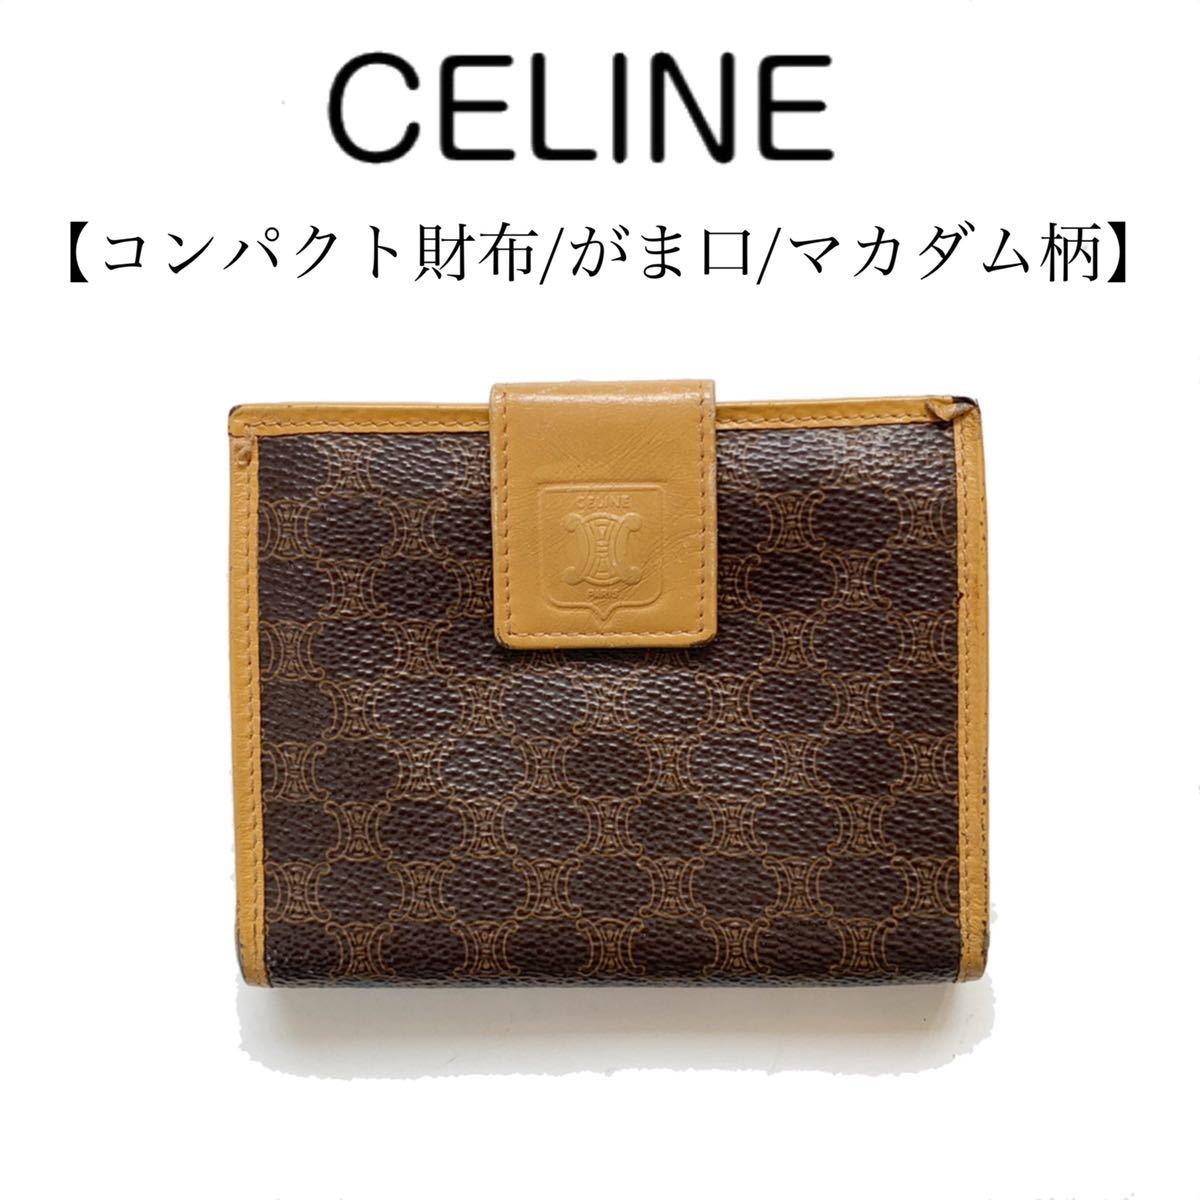 【送料込み】CELINE セリーヌ マカダム柄 二つ折り コンパクト財布 ミニ財布 レトロ